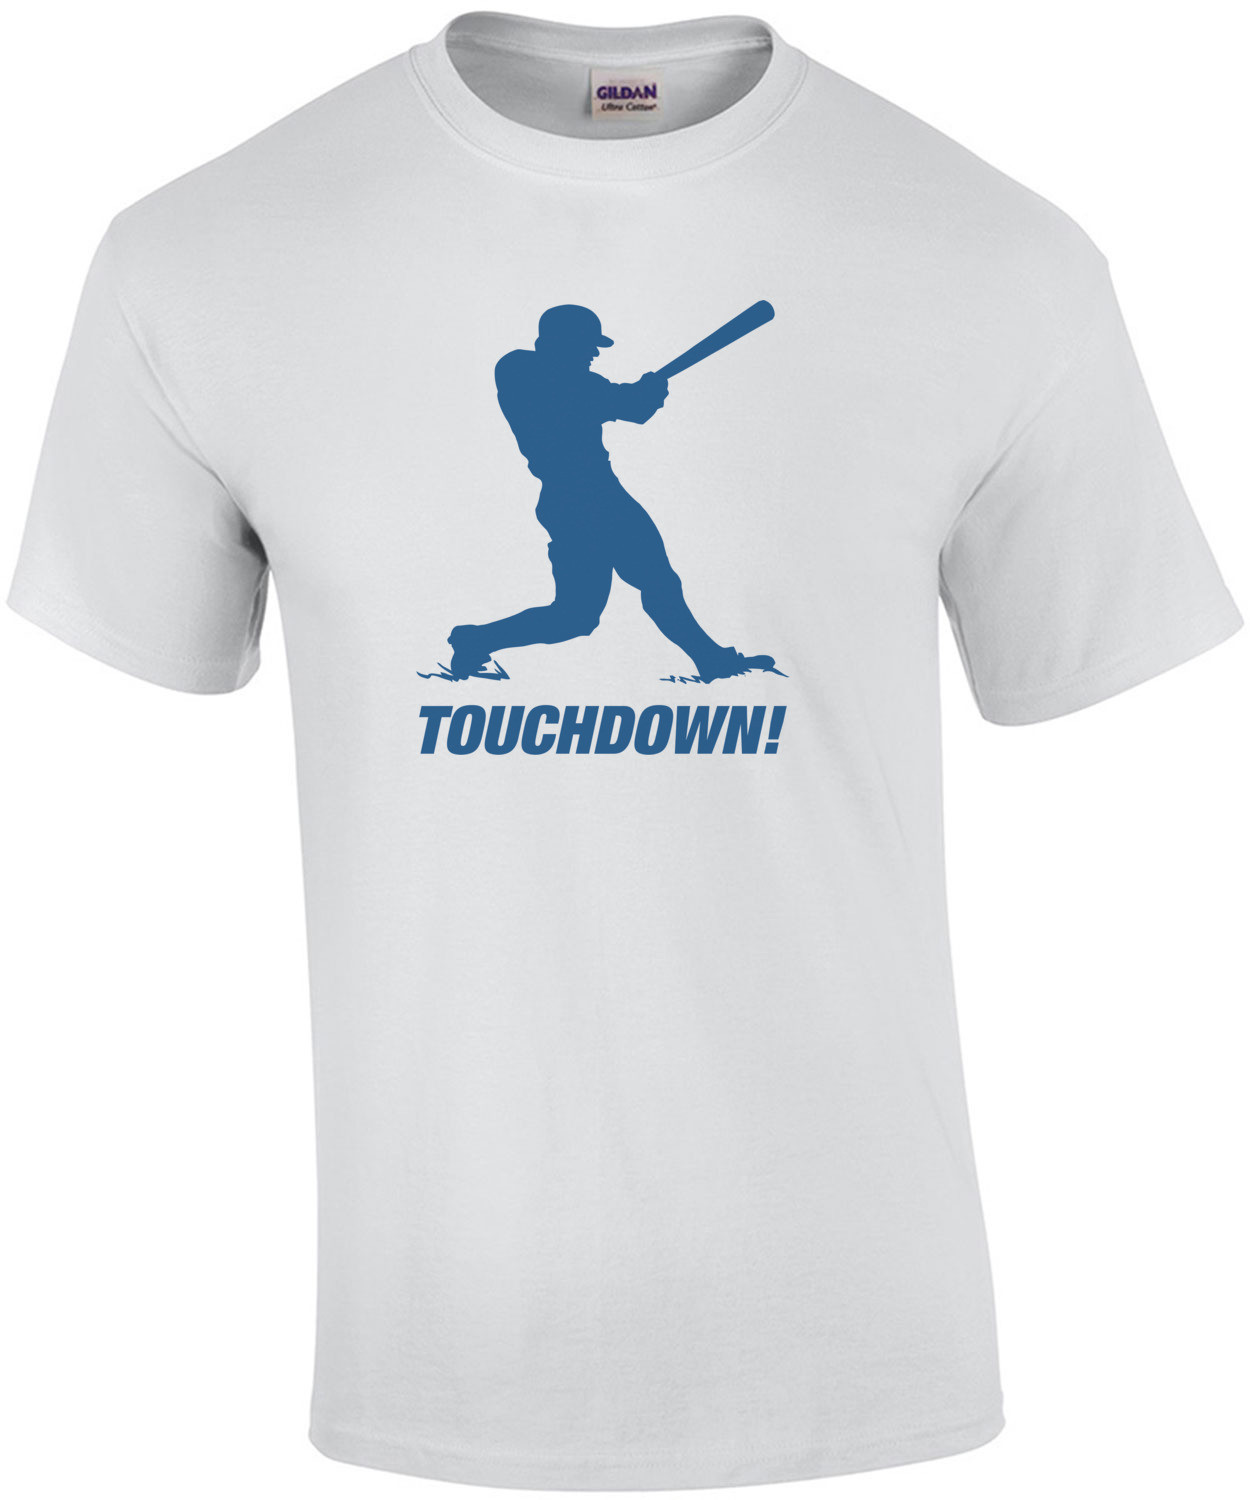 Touchdown! Shirt